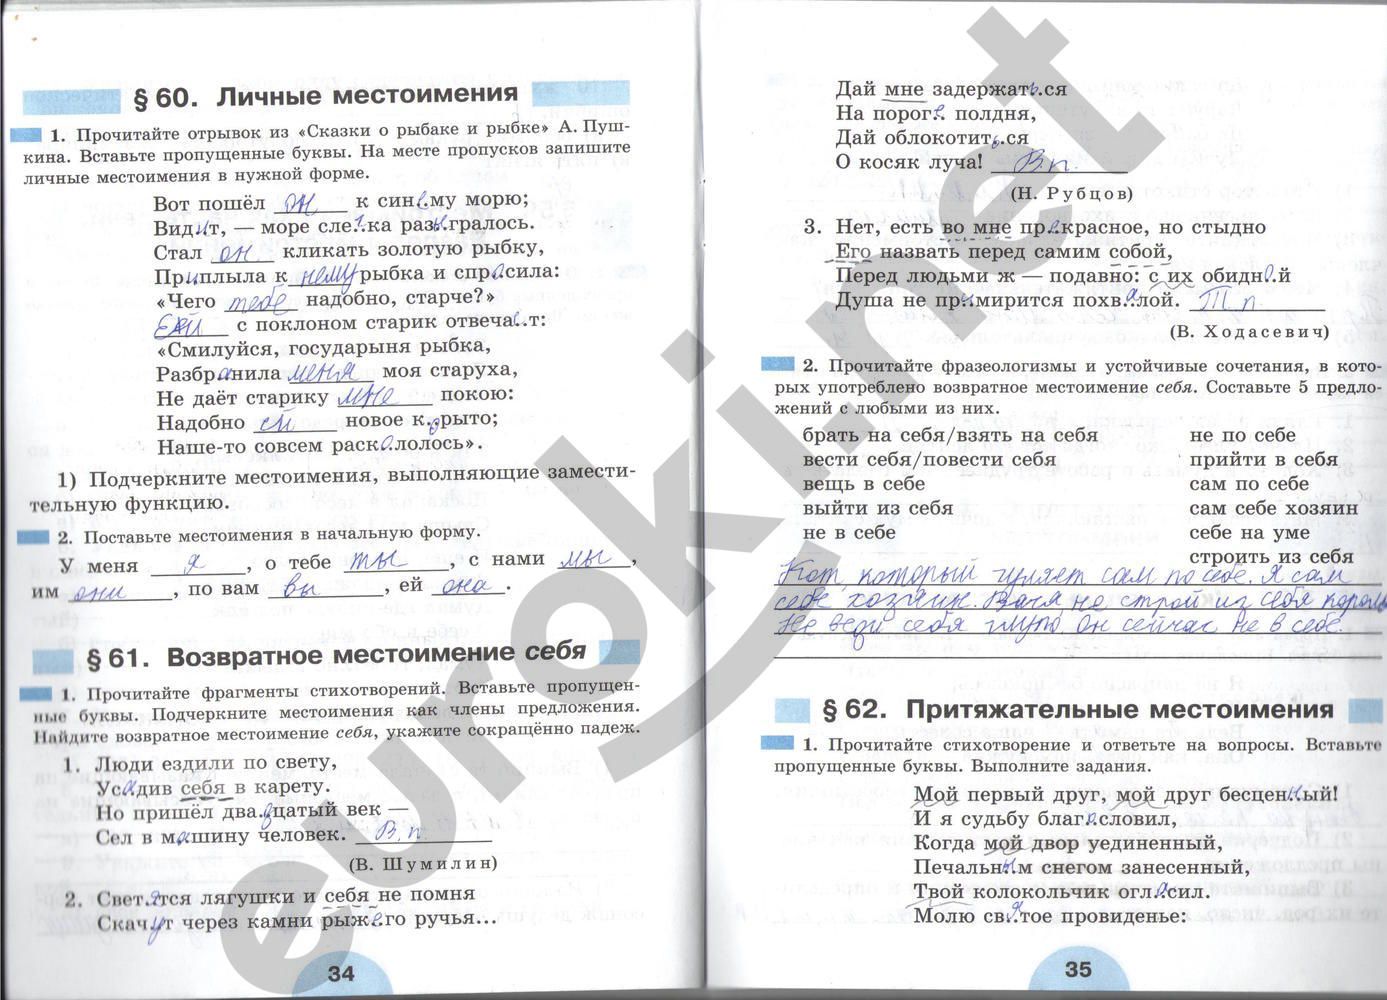 ГДЗ Русский язык 6 класс - стр. 34-35